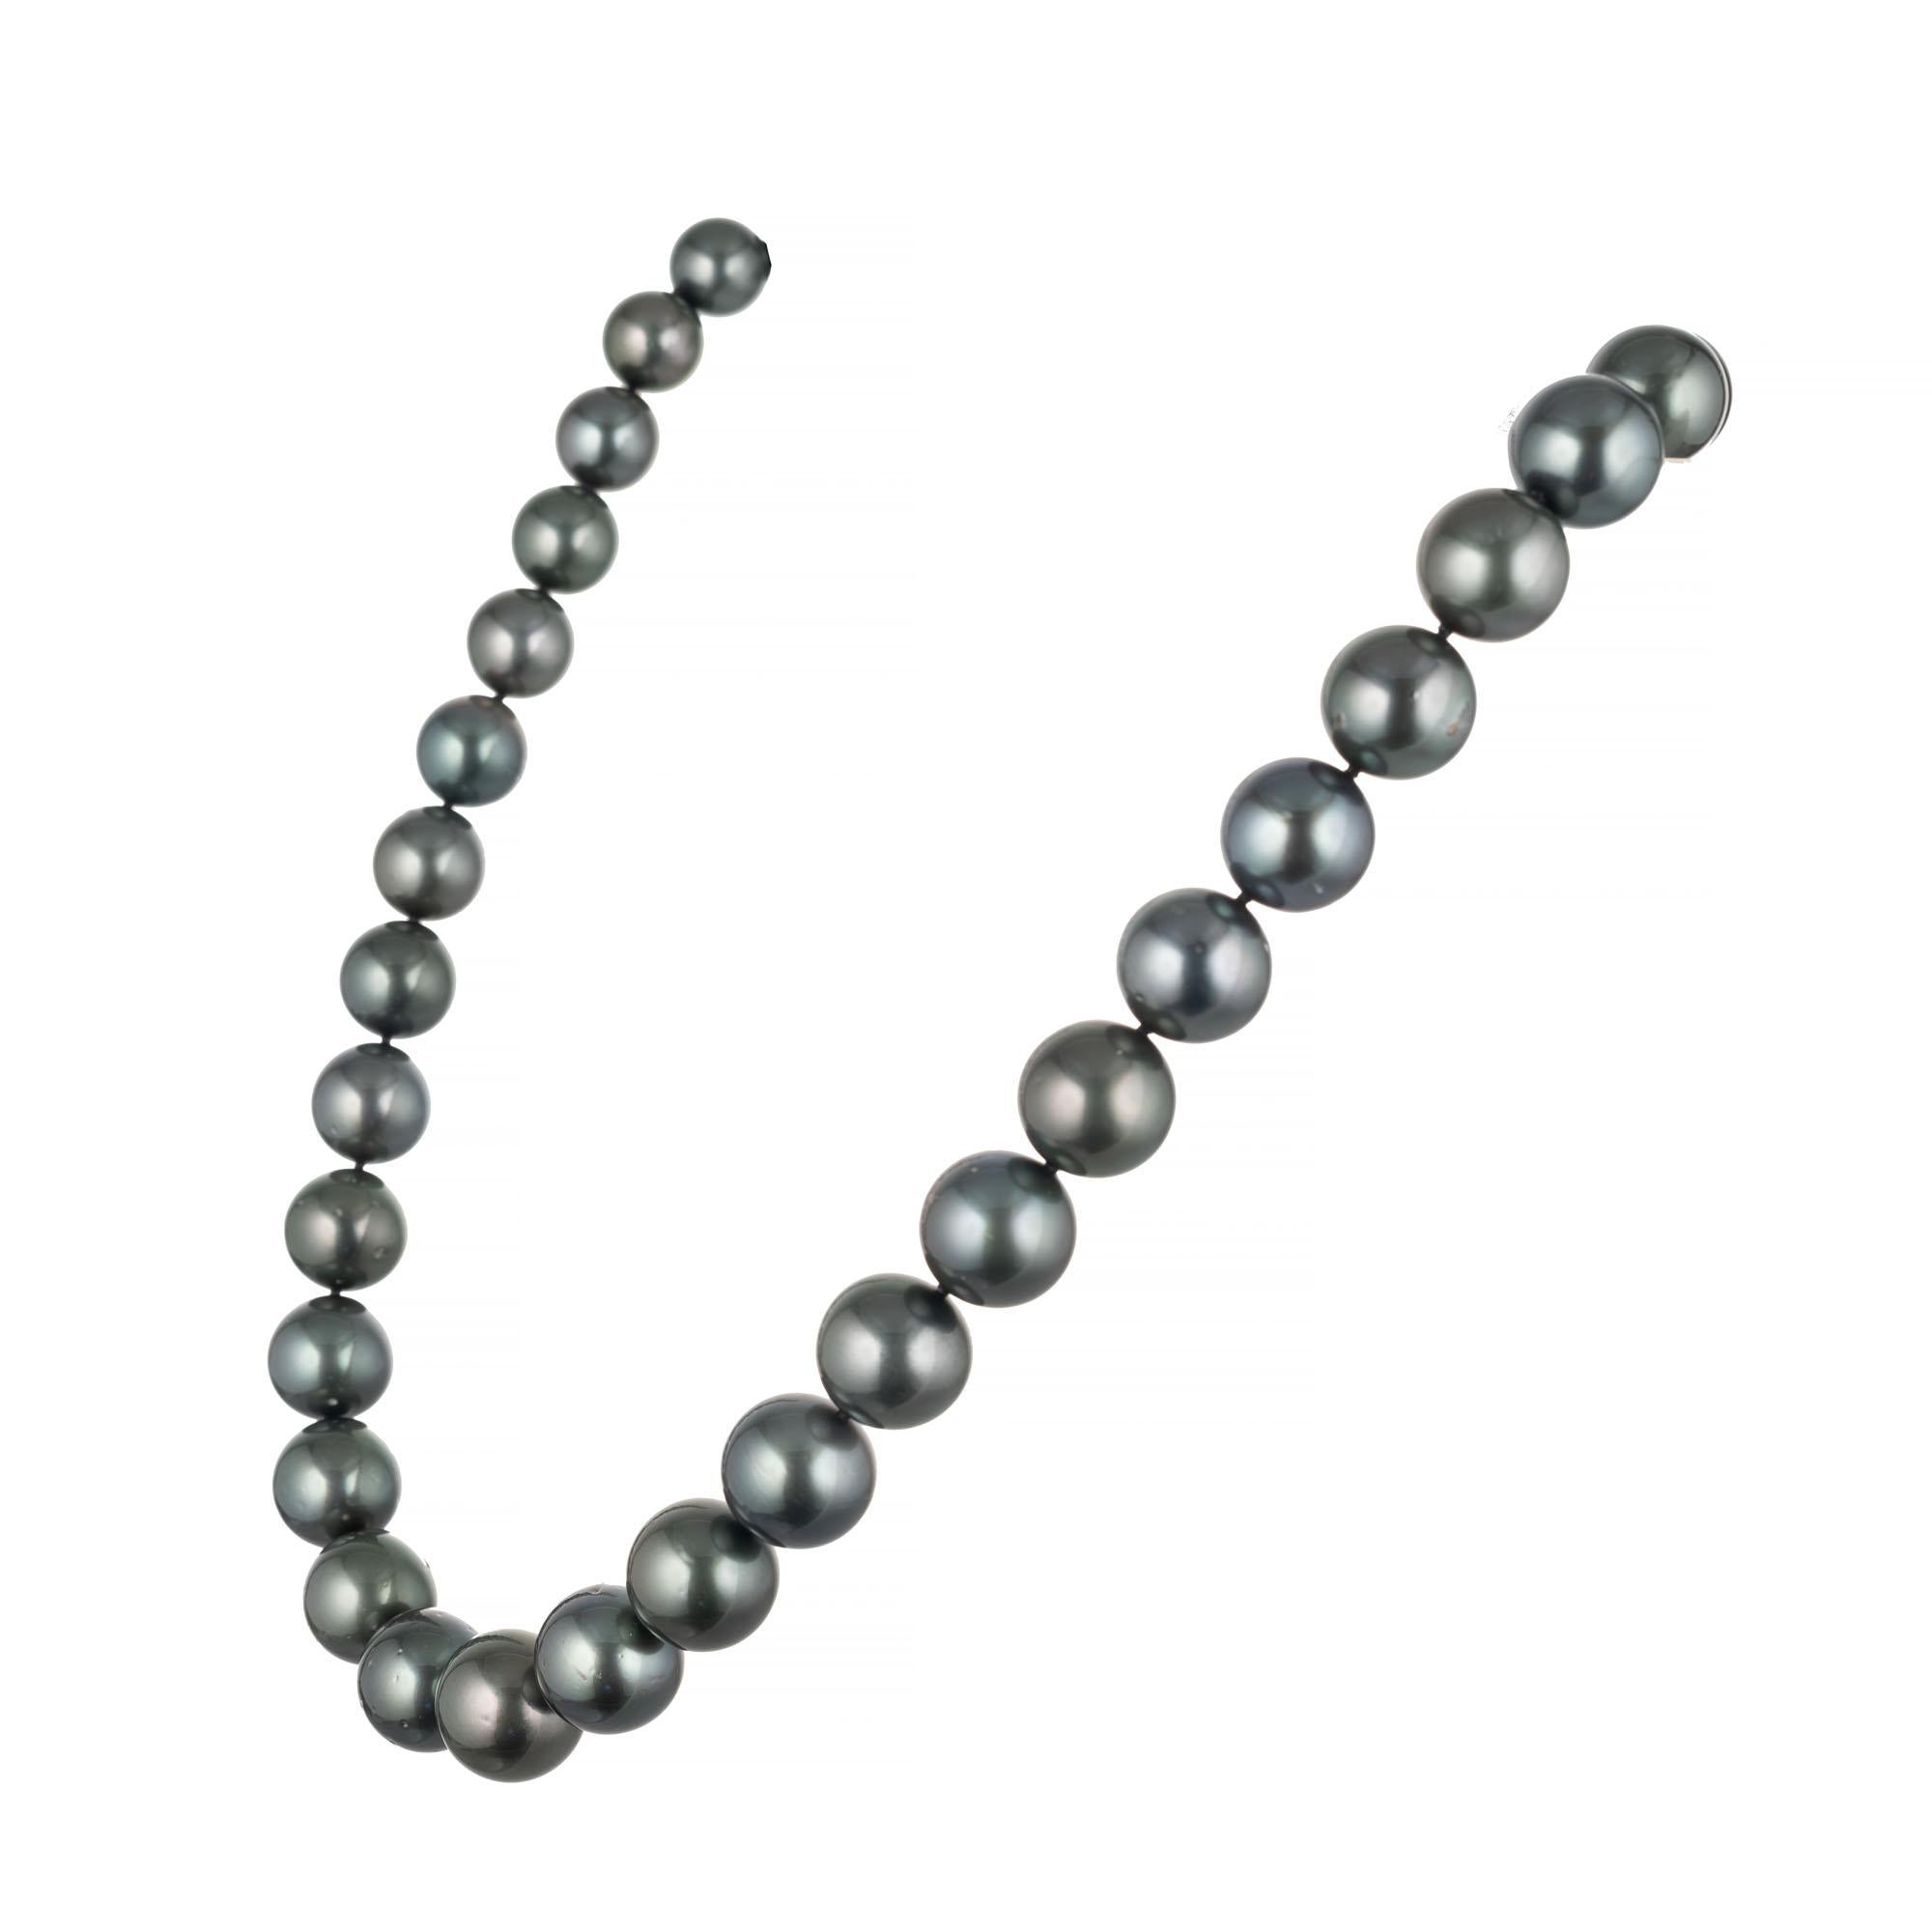 18 pouces de 37 perles de culture noires des mers du sud allant de 10mm à 13.25mm attachées par une boucle ondulée de 10mm en or blanc 14k. Très brillant, quelques imperfections. 18 pouces de long. Perles bien assorties. Un collier spectaculaire